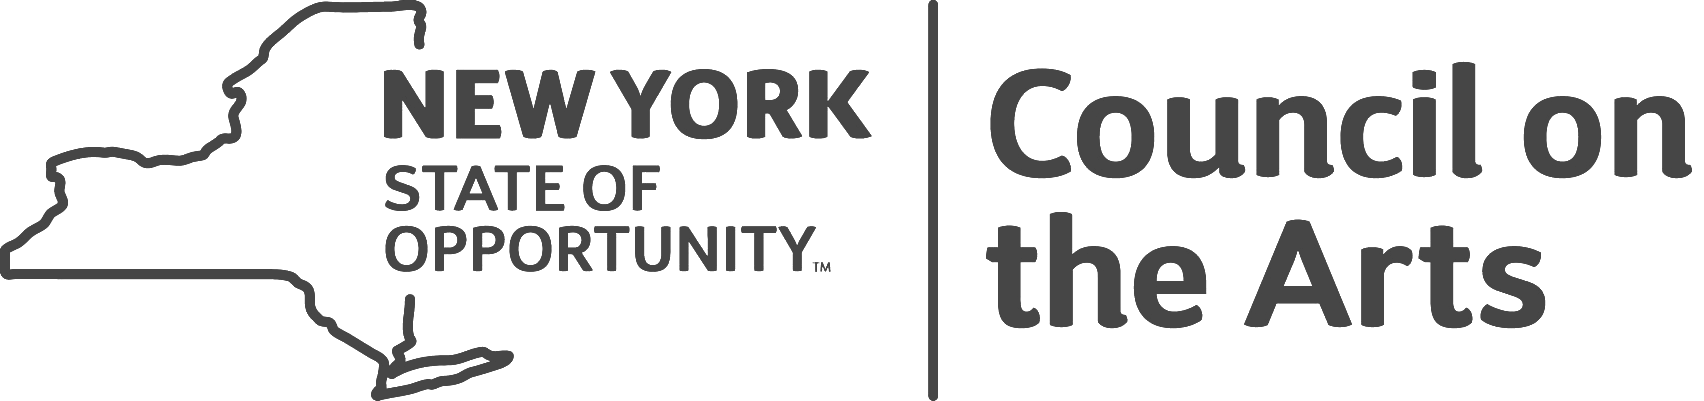 NYSCA Logo